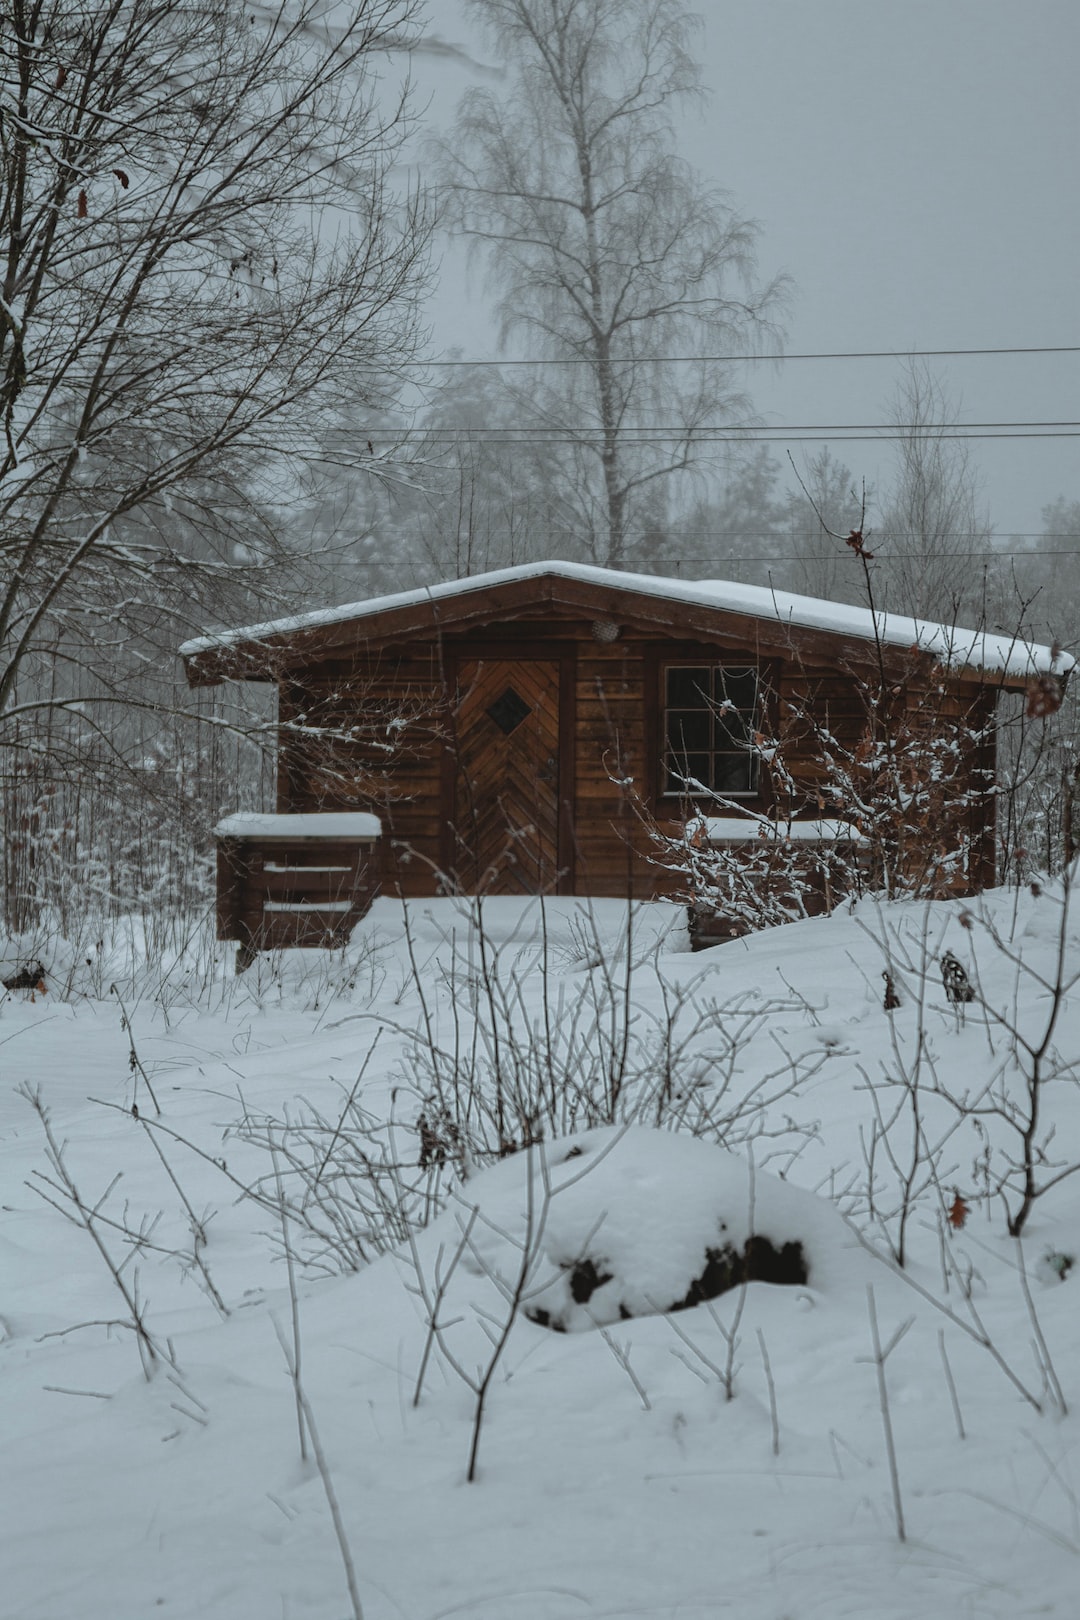 Cozy winter cabin.